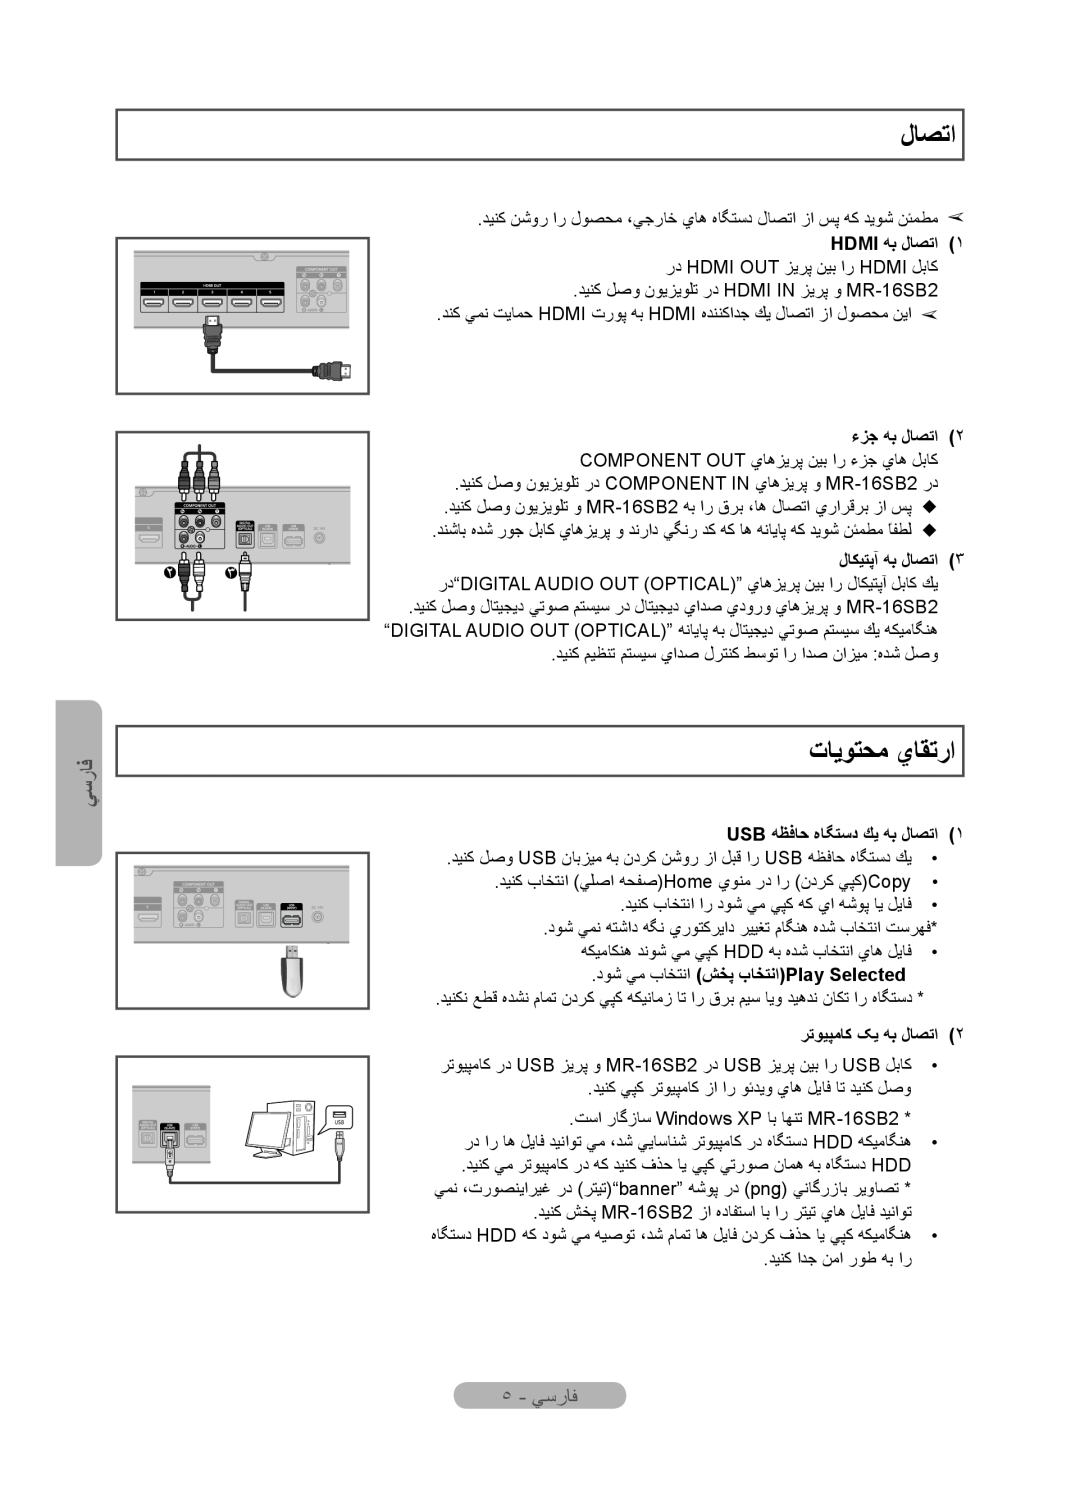 Samsung MR-16SB2 manual ﺕﺎﻳﻮﺘﺤﻣ ﻱﺎﻘﺗﺭﺍ, ٥ - ﻲﺳﺭﺎﻓ, Hdmi ﻪﺑ ﻝﺎﺼﺗﺍ, ءﺰﺟ ﻪﺑ ﻝﺎﺼﺗﺍ, ﻝﺎﻜﻴﺘﭘﺁ ﻪﺑ ﻝﺎﺼﺗﺍ, ﺮﺗﻮﻴﭙﻣﺎﮐ ﮏﻳ ﻪﺑ ﻝﺎﺼﺗﺍ 